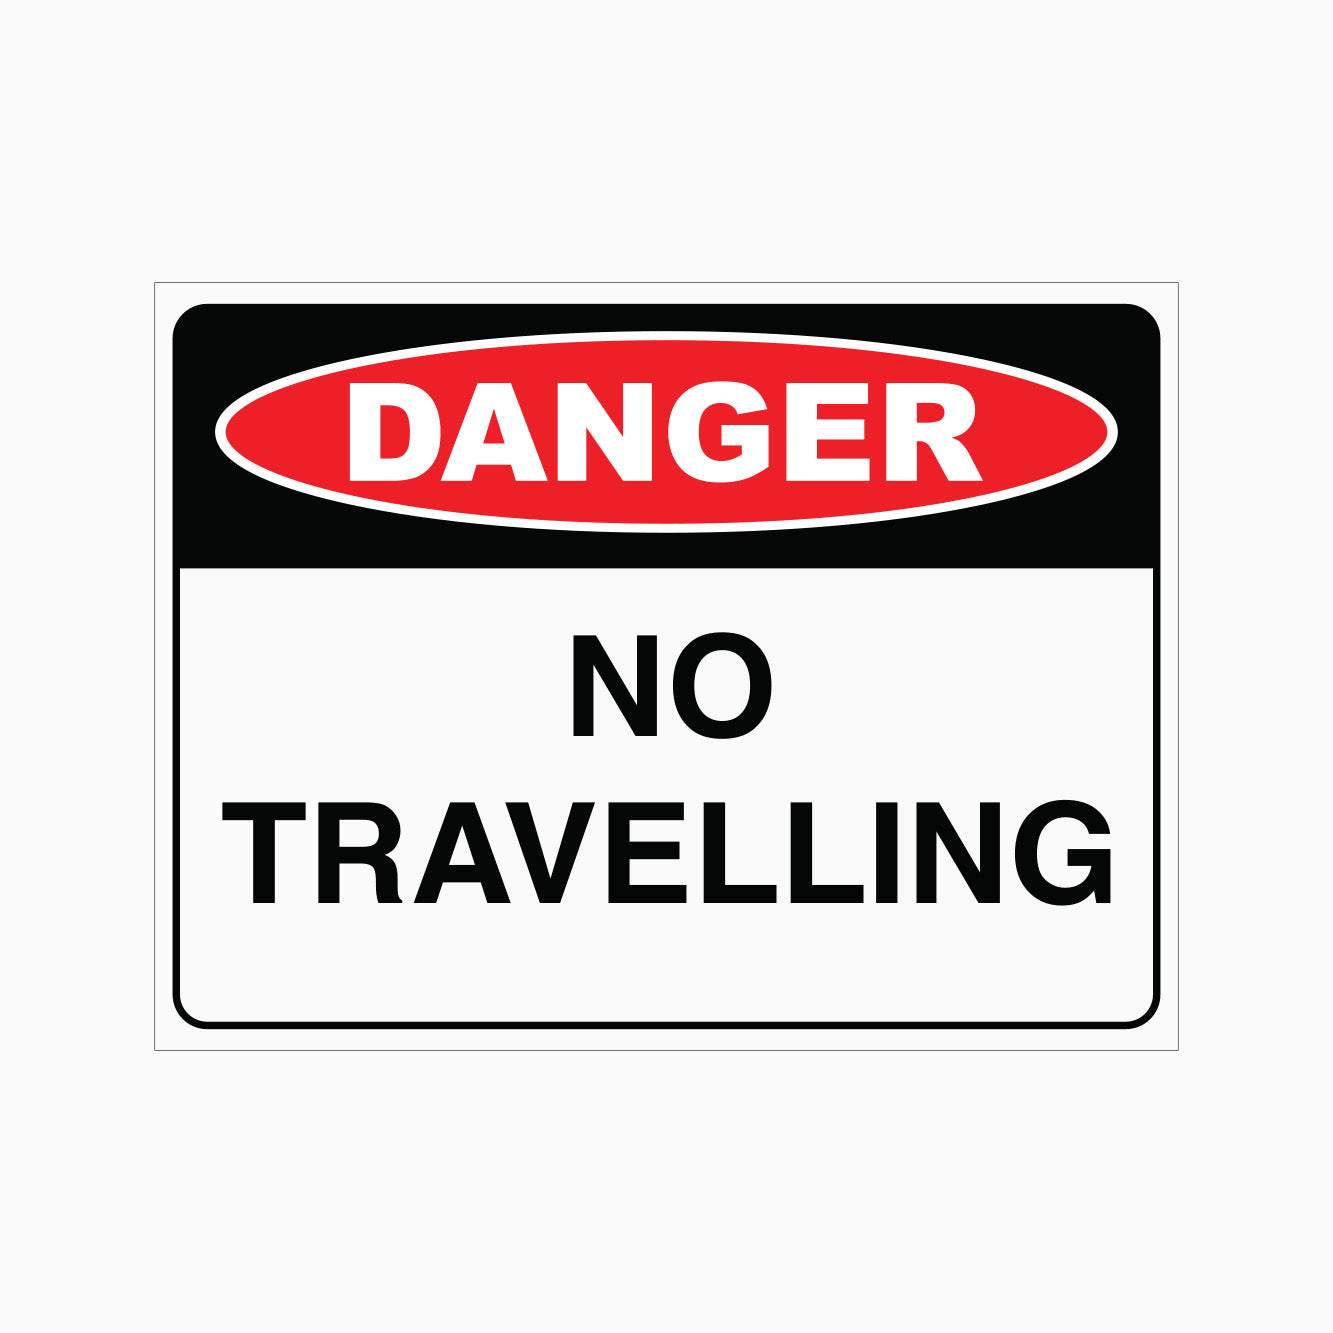 DANGER SIGN - NO TRAVELLING SIGN